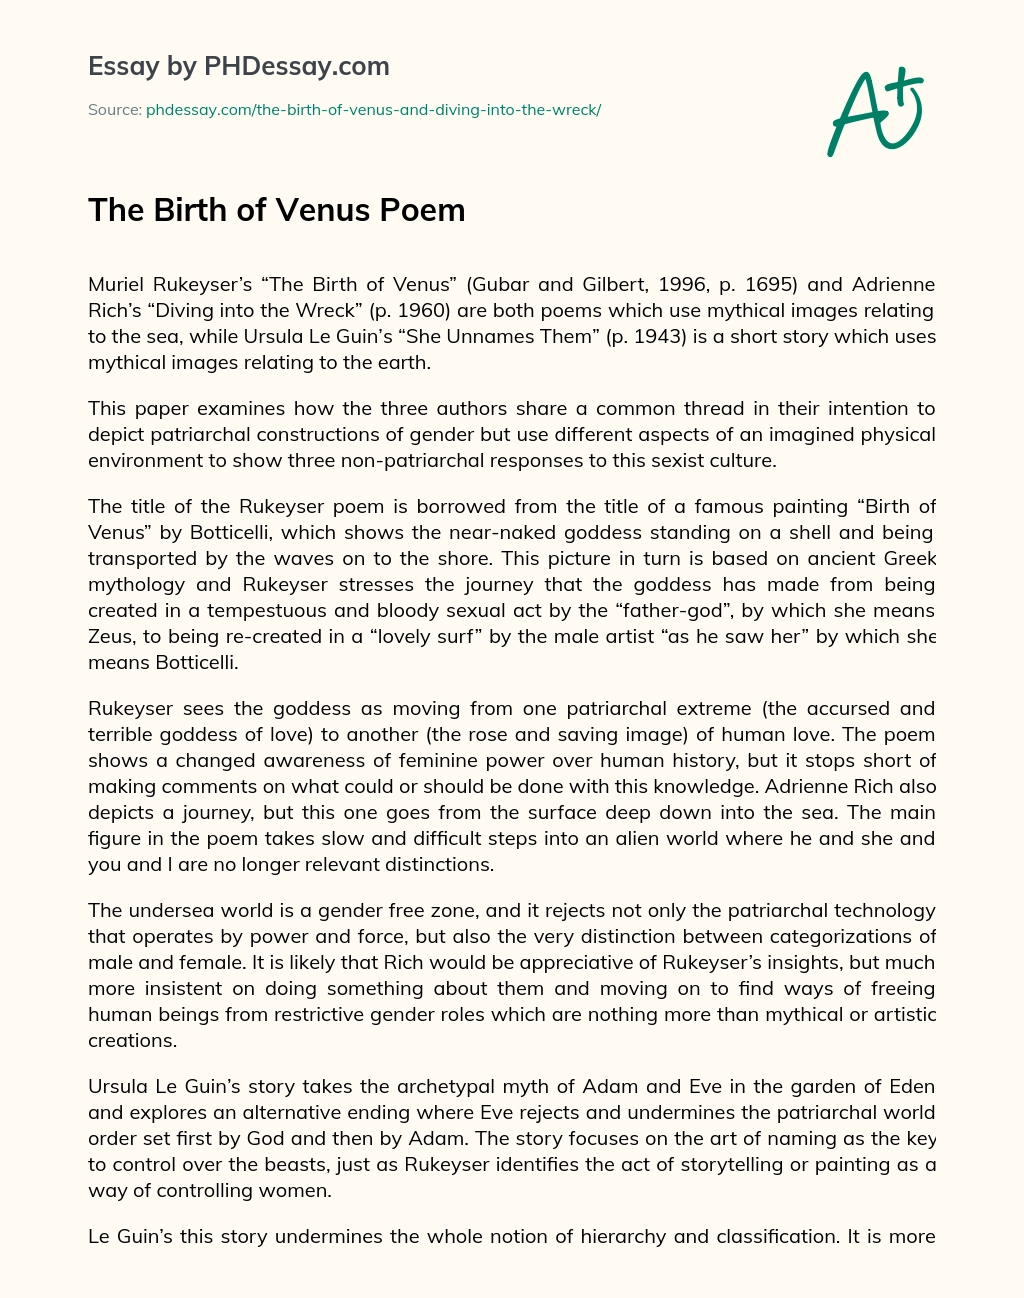 The Birth of Venus Poem essay